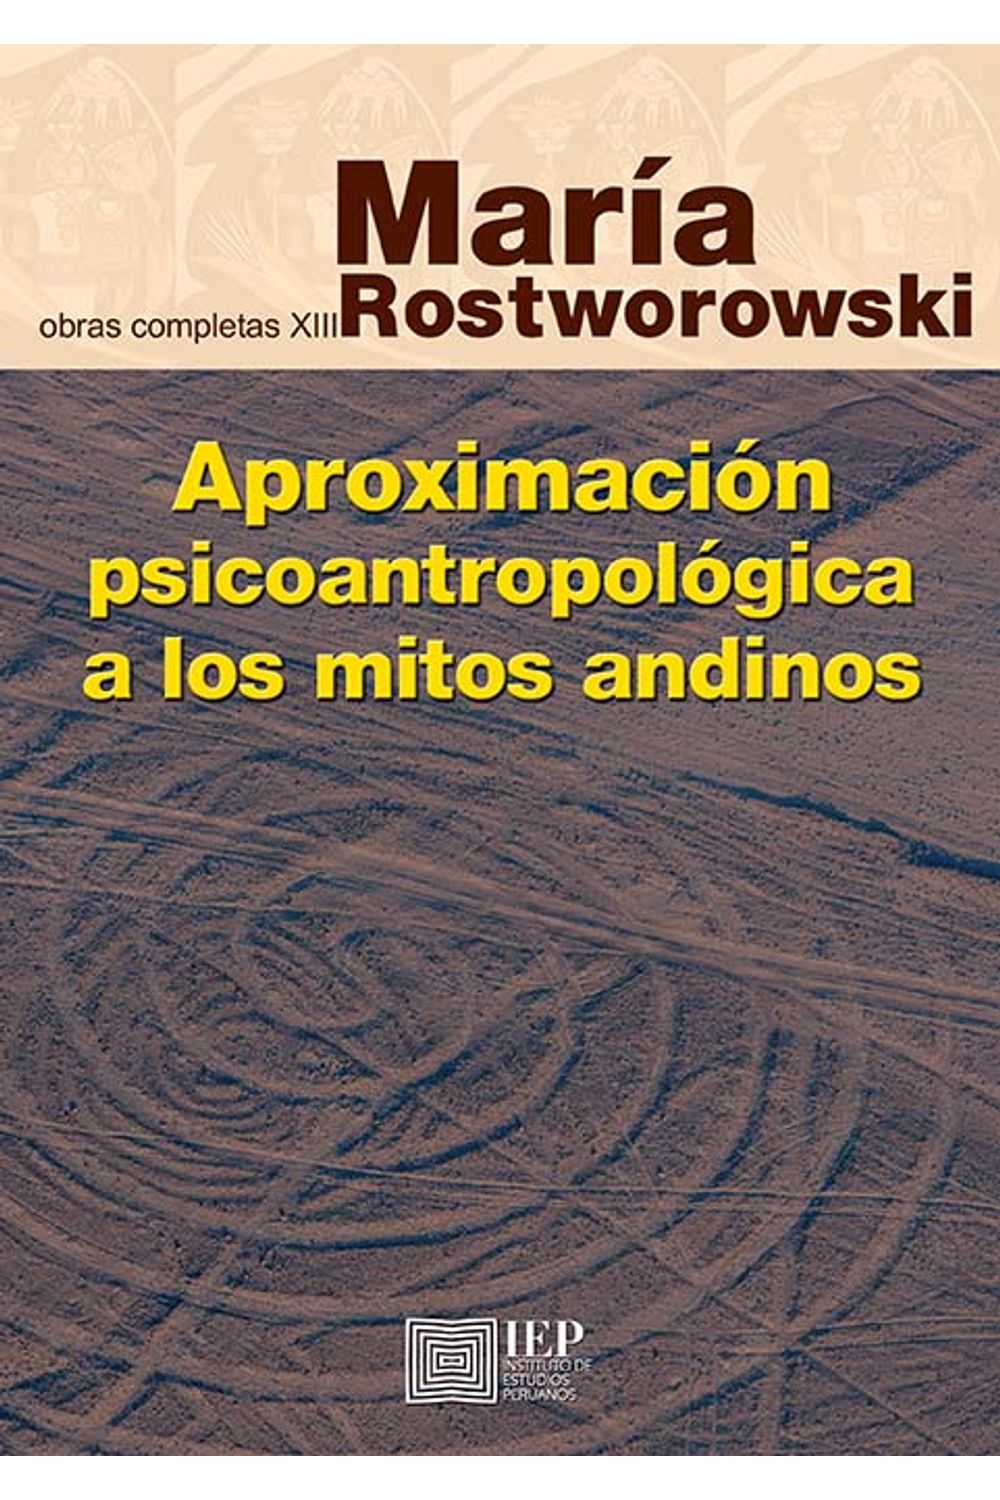 bm-aproximacion-psicoantropologica-a-los-mitos-andinos-instituto-de-estudios-peruanos-iep-9789972516566